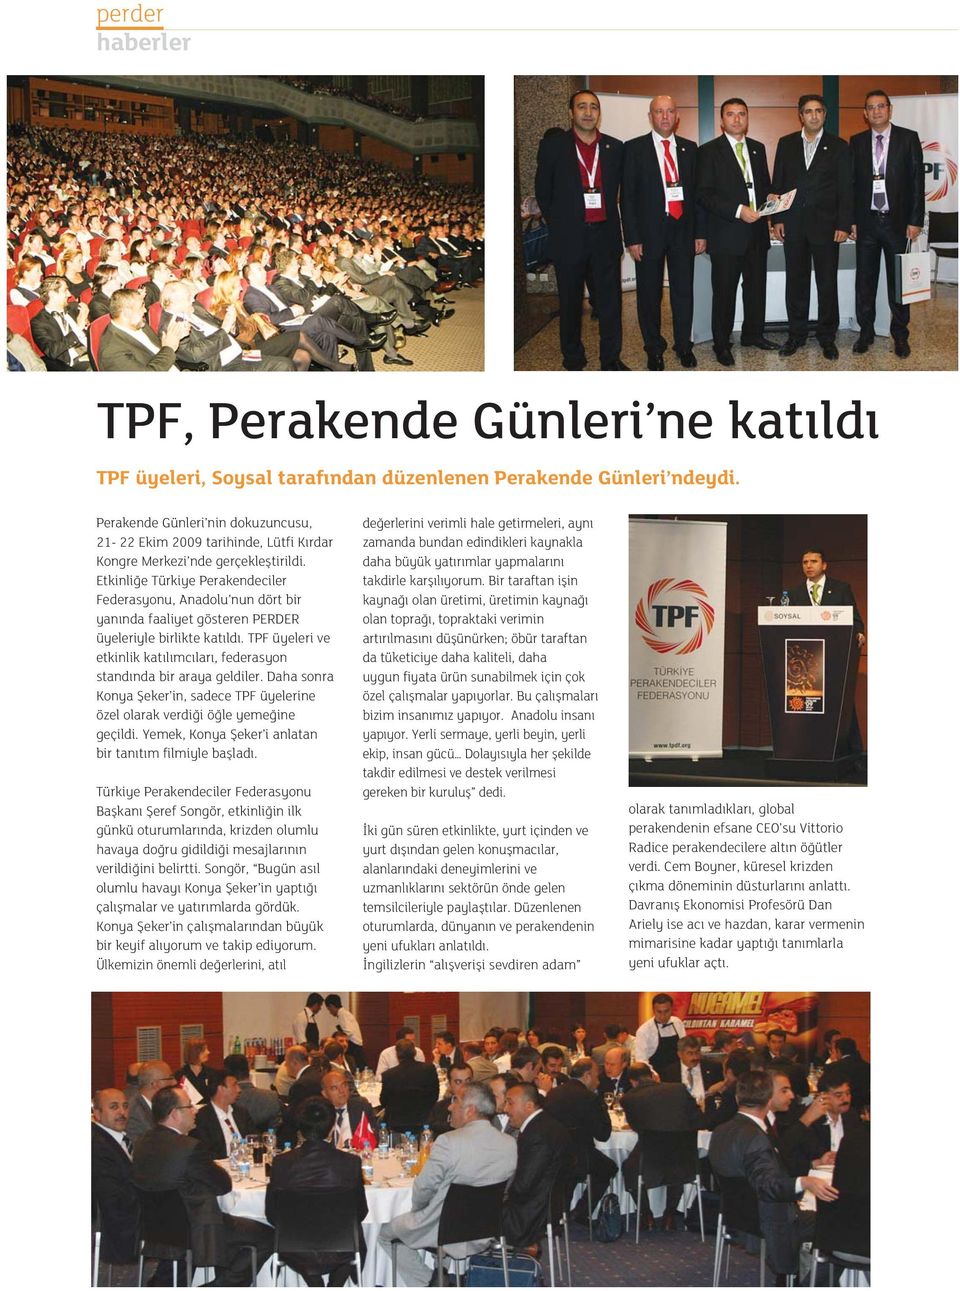 Etkinli e Türkiye Perakendeciler Federasyonu, Anadolu nun dört bir yan nda faaliyet gösteren PERDER üyeleriyle birlikte kat ld.